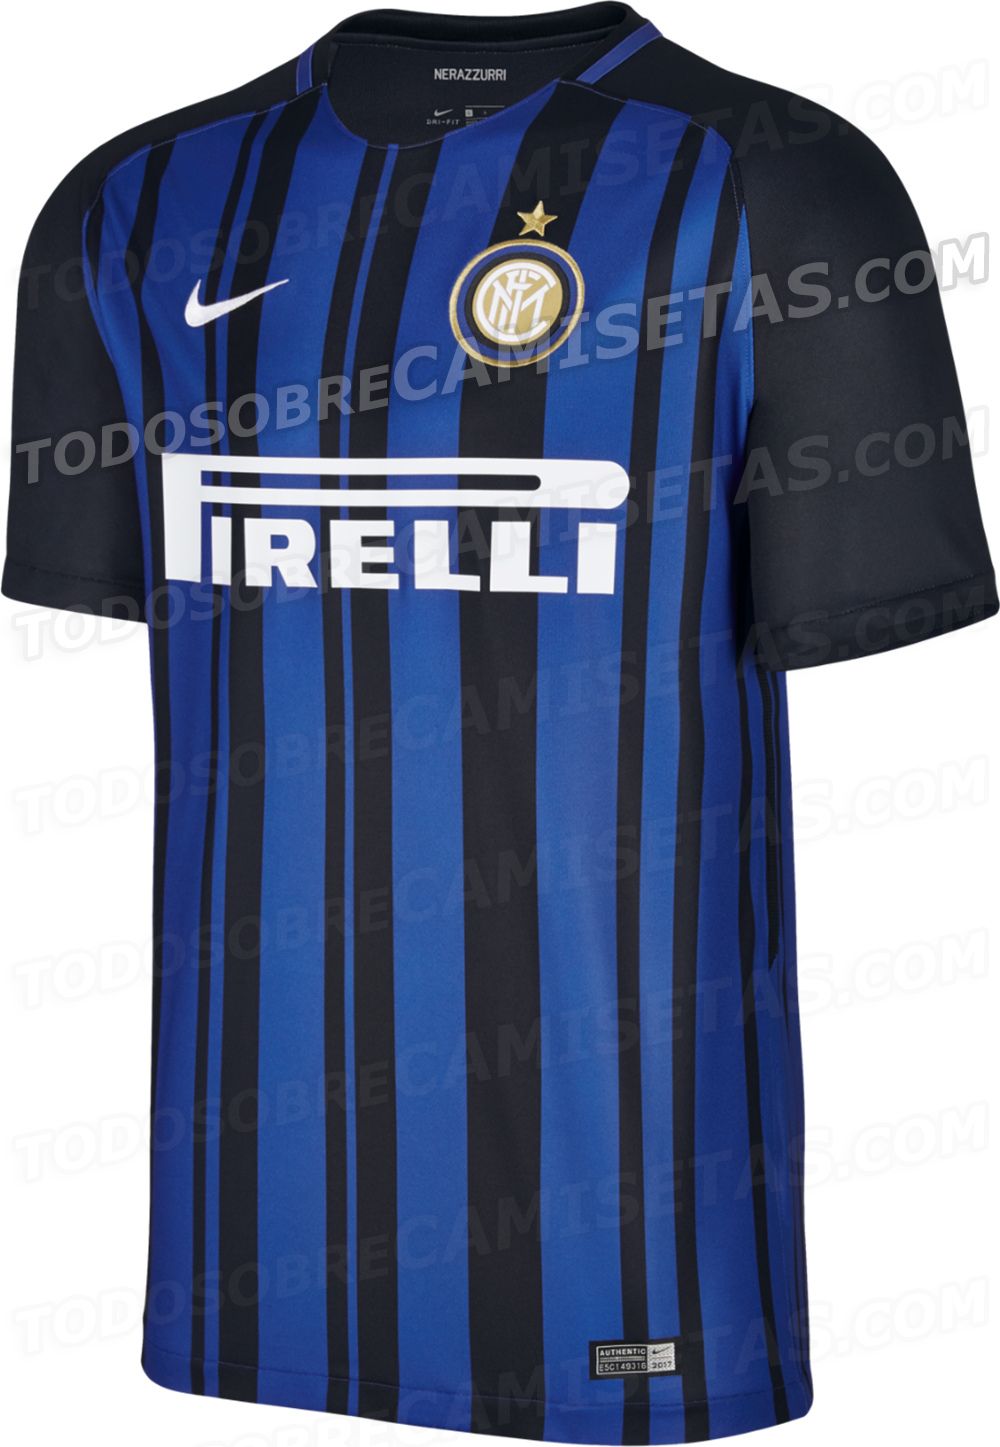 Inter Milan 2017-18 Nike Home Kit LEAKED - Todo Sobre Camisetas